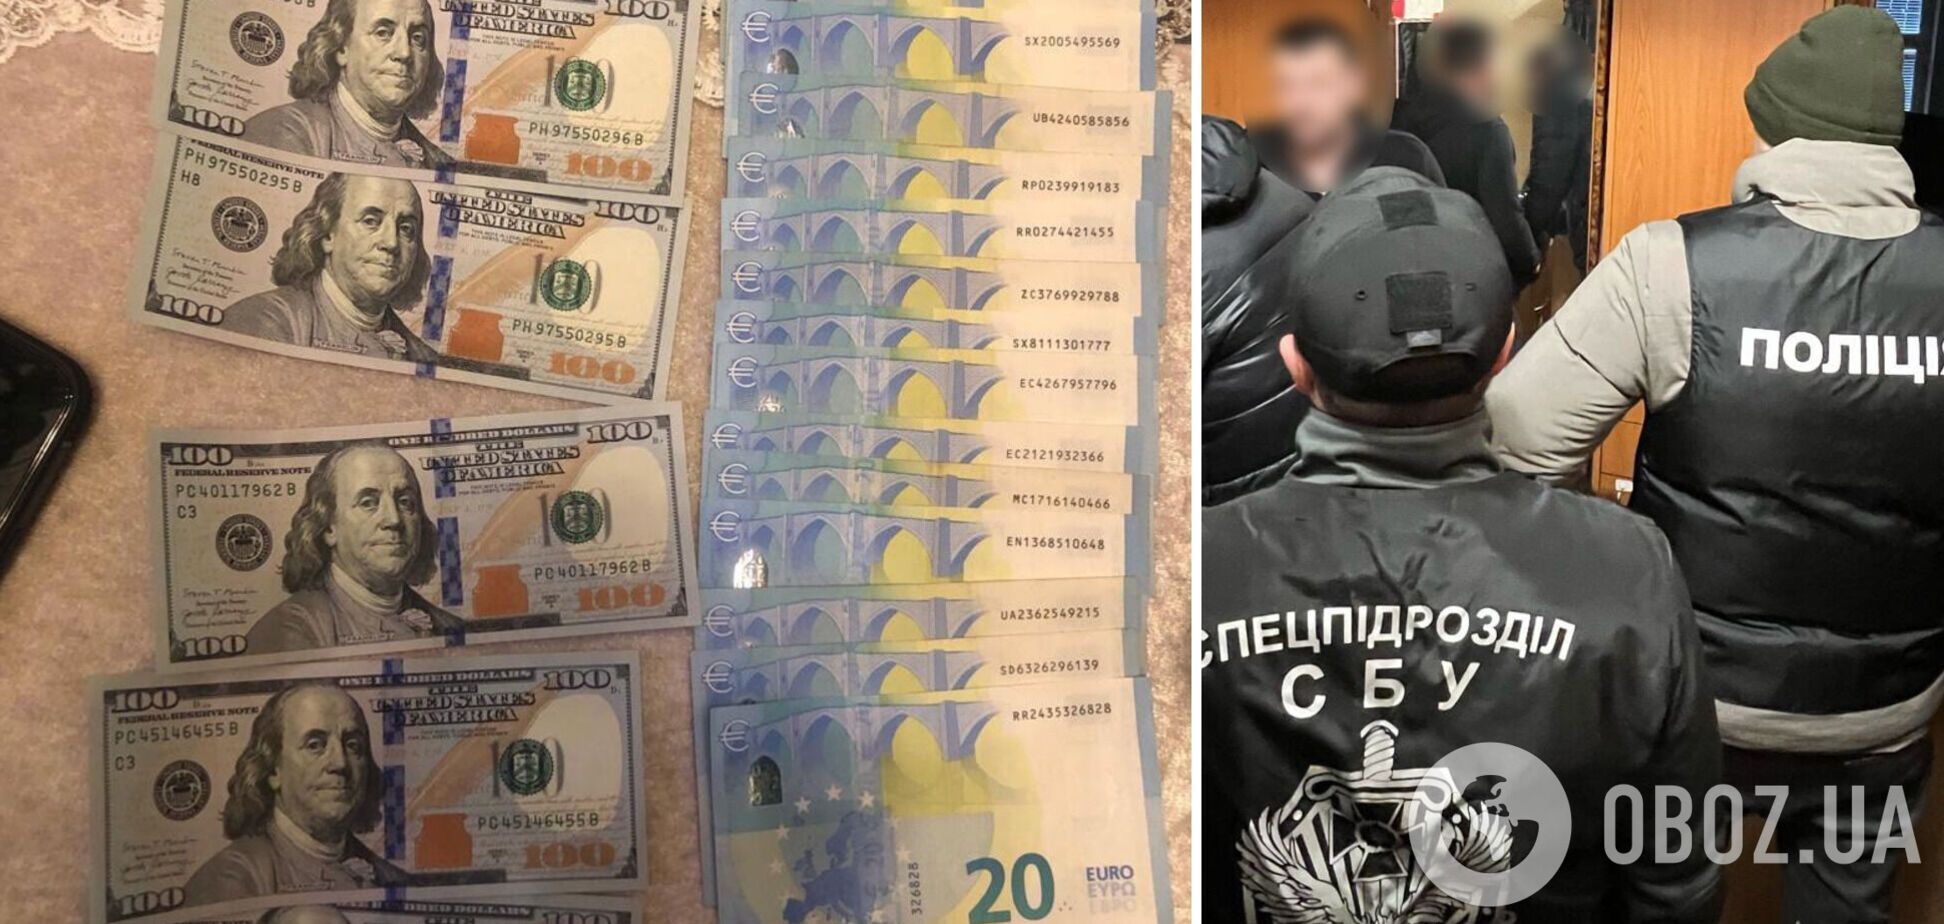 Фальшивомонетчики подсовывали украинцам фальшивые доллары